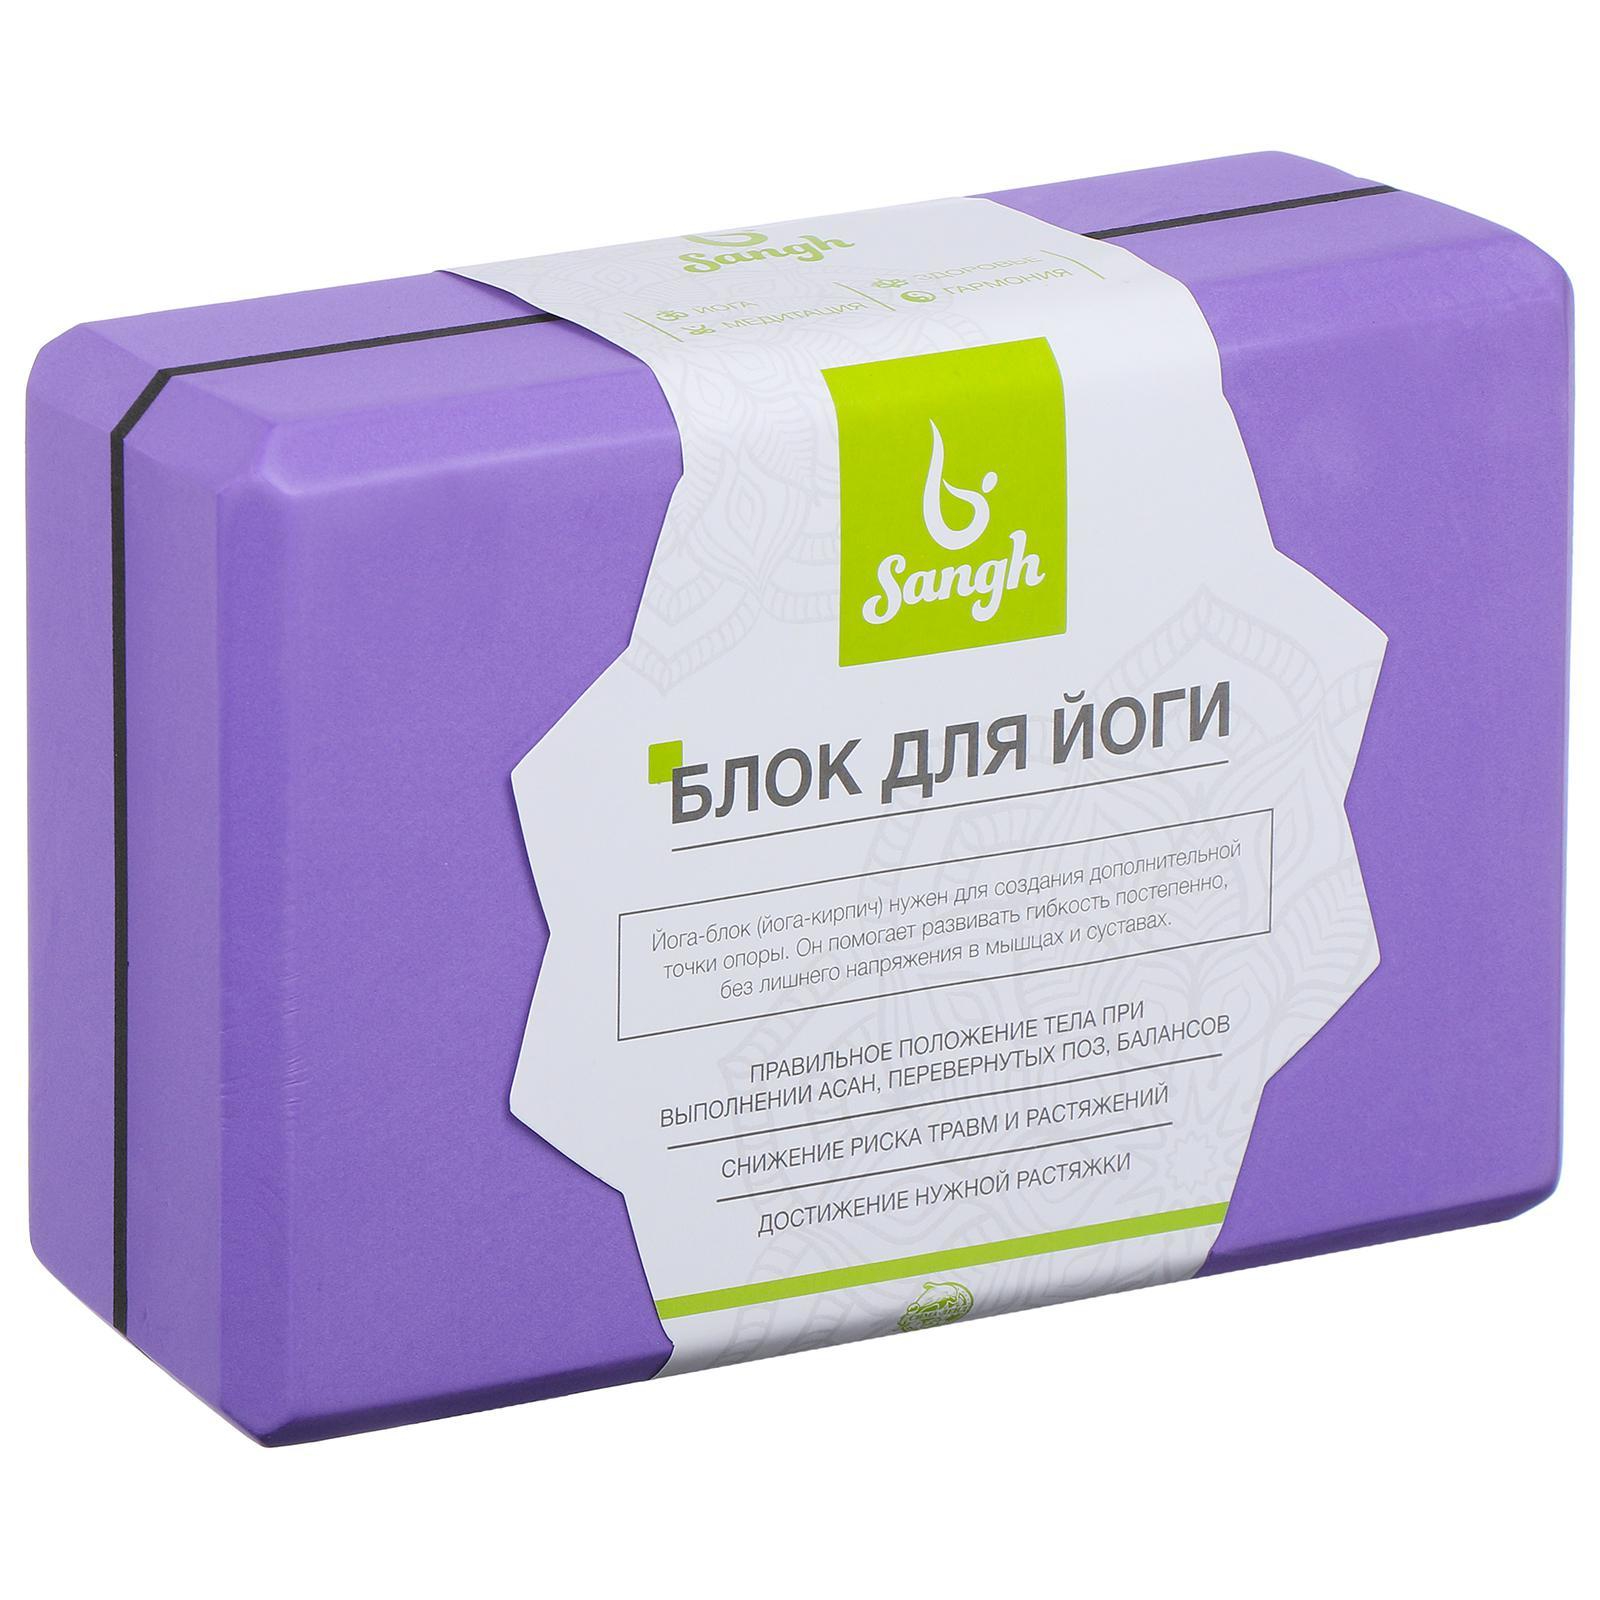 Блок для йоги Sangh 120 23x15x8 см, фиолетовый